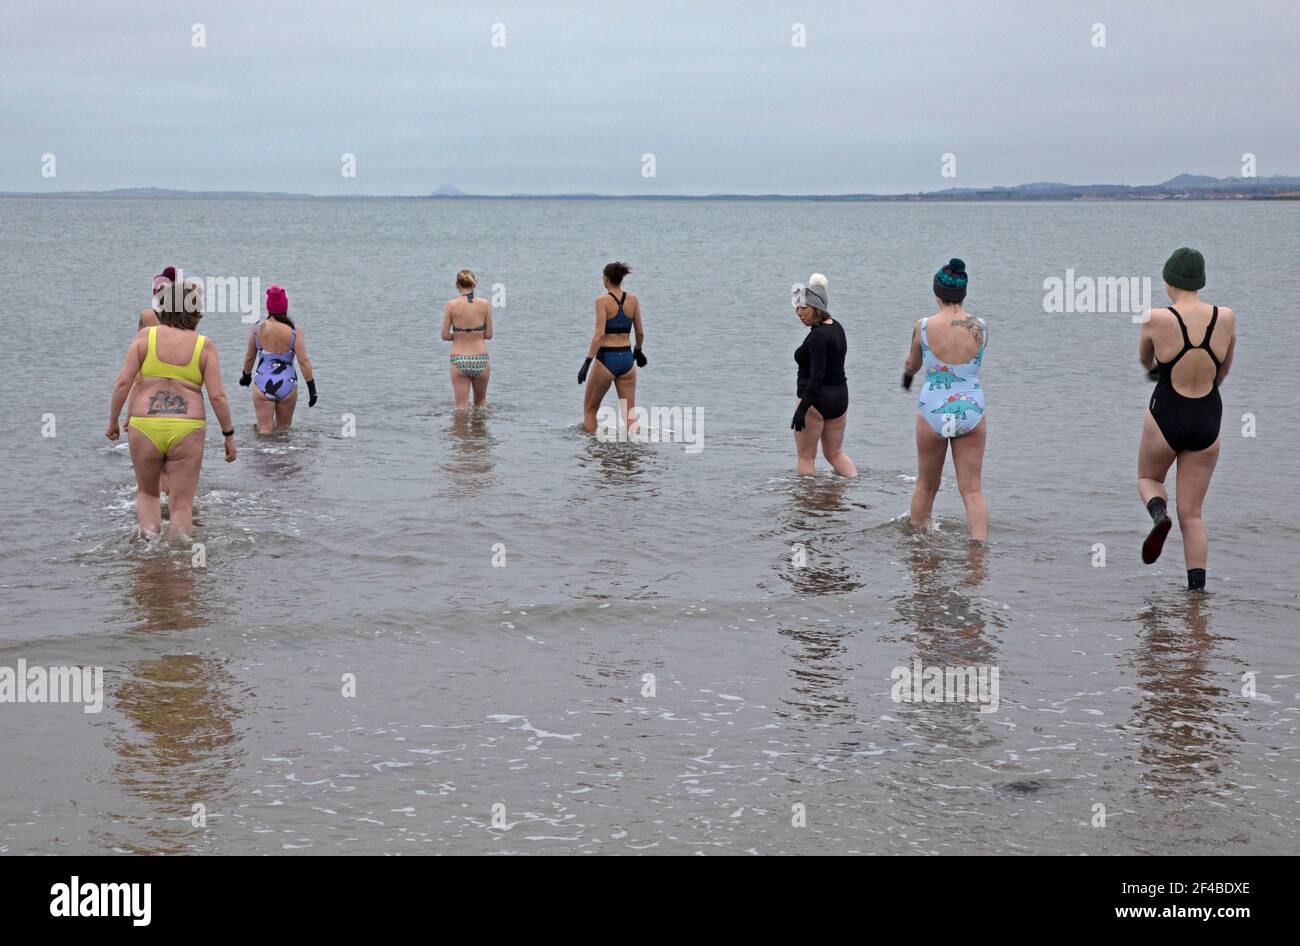 Portobello, Edimburgo, Scozia, Regno Unito. 20 Marzo 2021. L'Equinozio Vernale, durante gli Equinozi l'inclinazione della Terra (rispetto al Sole) è 0° e per la sua durata del giorno e della notte sono quasi uguali al giorno dell'Equinozio, cioè 12 ore. Nella foto: Anna of WanderWomen Scotland conduce una sessione di allenamento di nuoto con l'acqua fredda con sei donne nel Firth of Forth, completando un cerchio completo da Covid Lockdown nel marzo 2020, quando diciassette donne si unirono ad Anna per un 'bagno pring'. Il sole non appariva oggi, ma queste donne godevano ancora dell'estprerogenza della mattina presto. Credit: Arch White/Alamy Live News Foto Stock